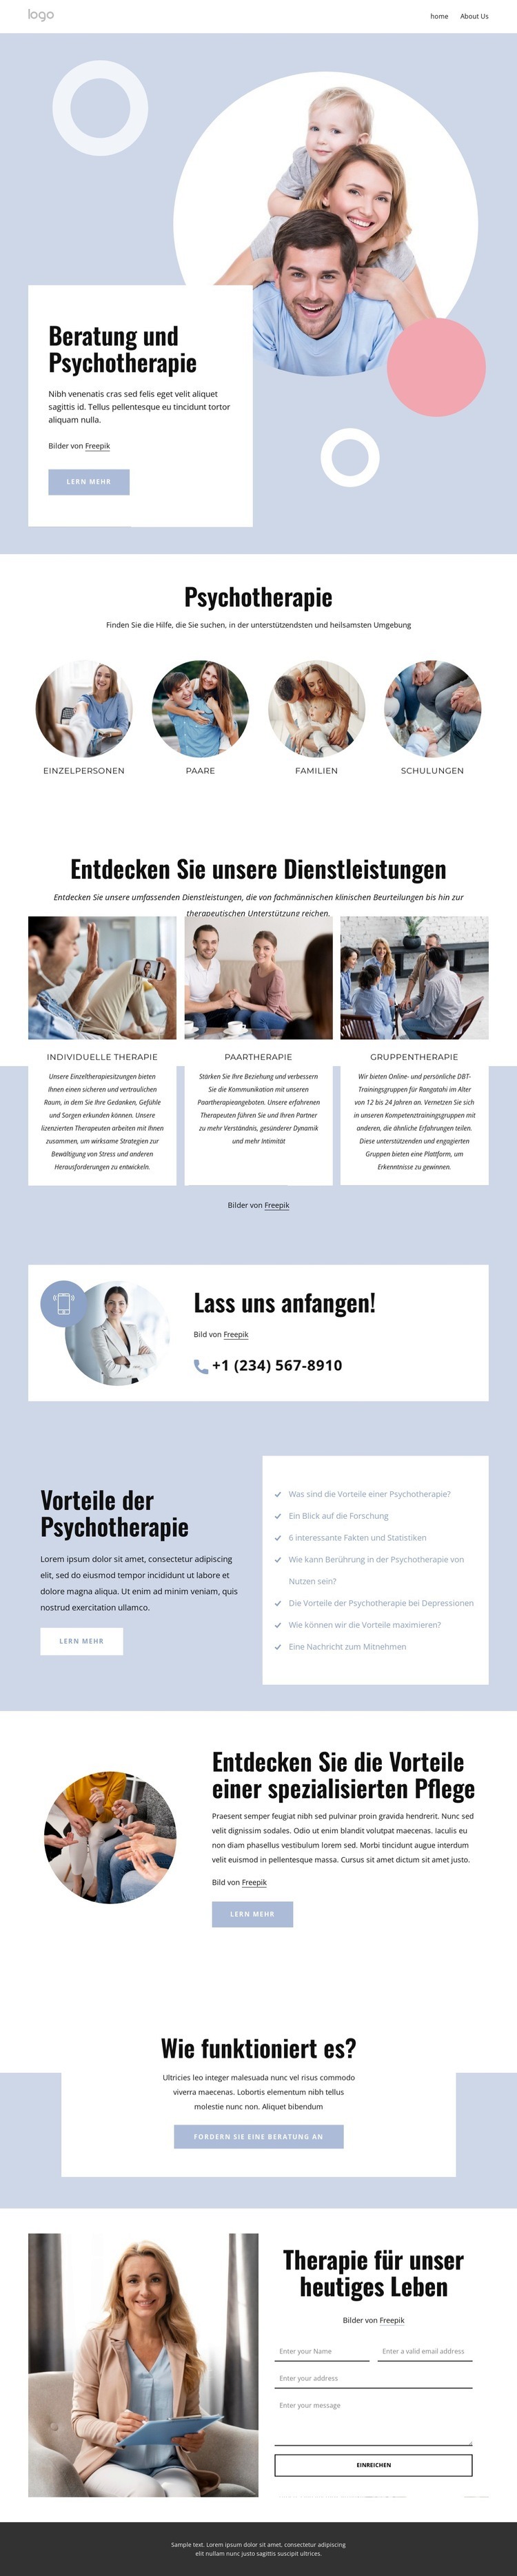 Beratung und Psychotherapie Website design